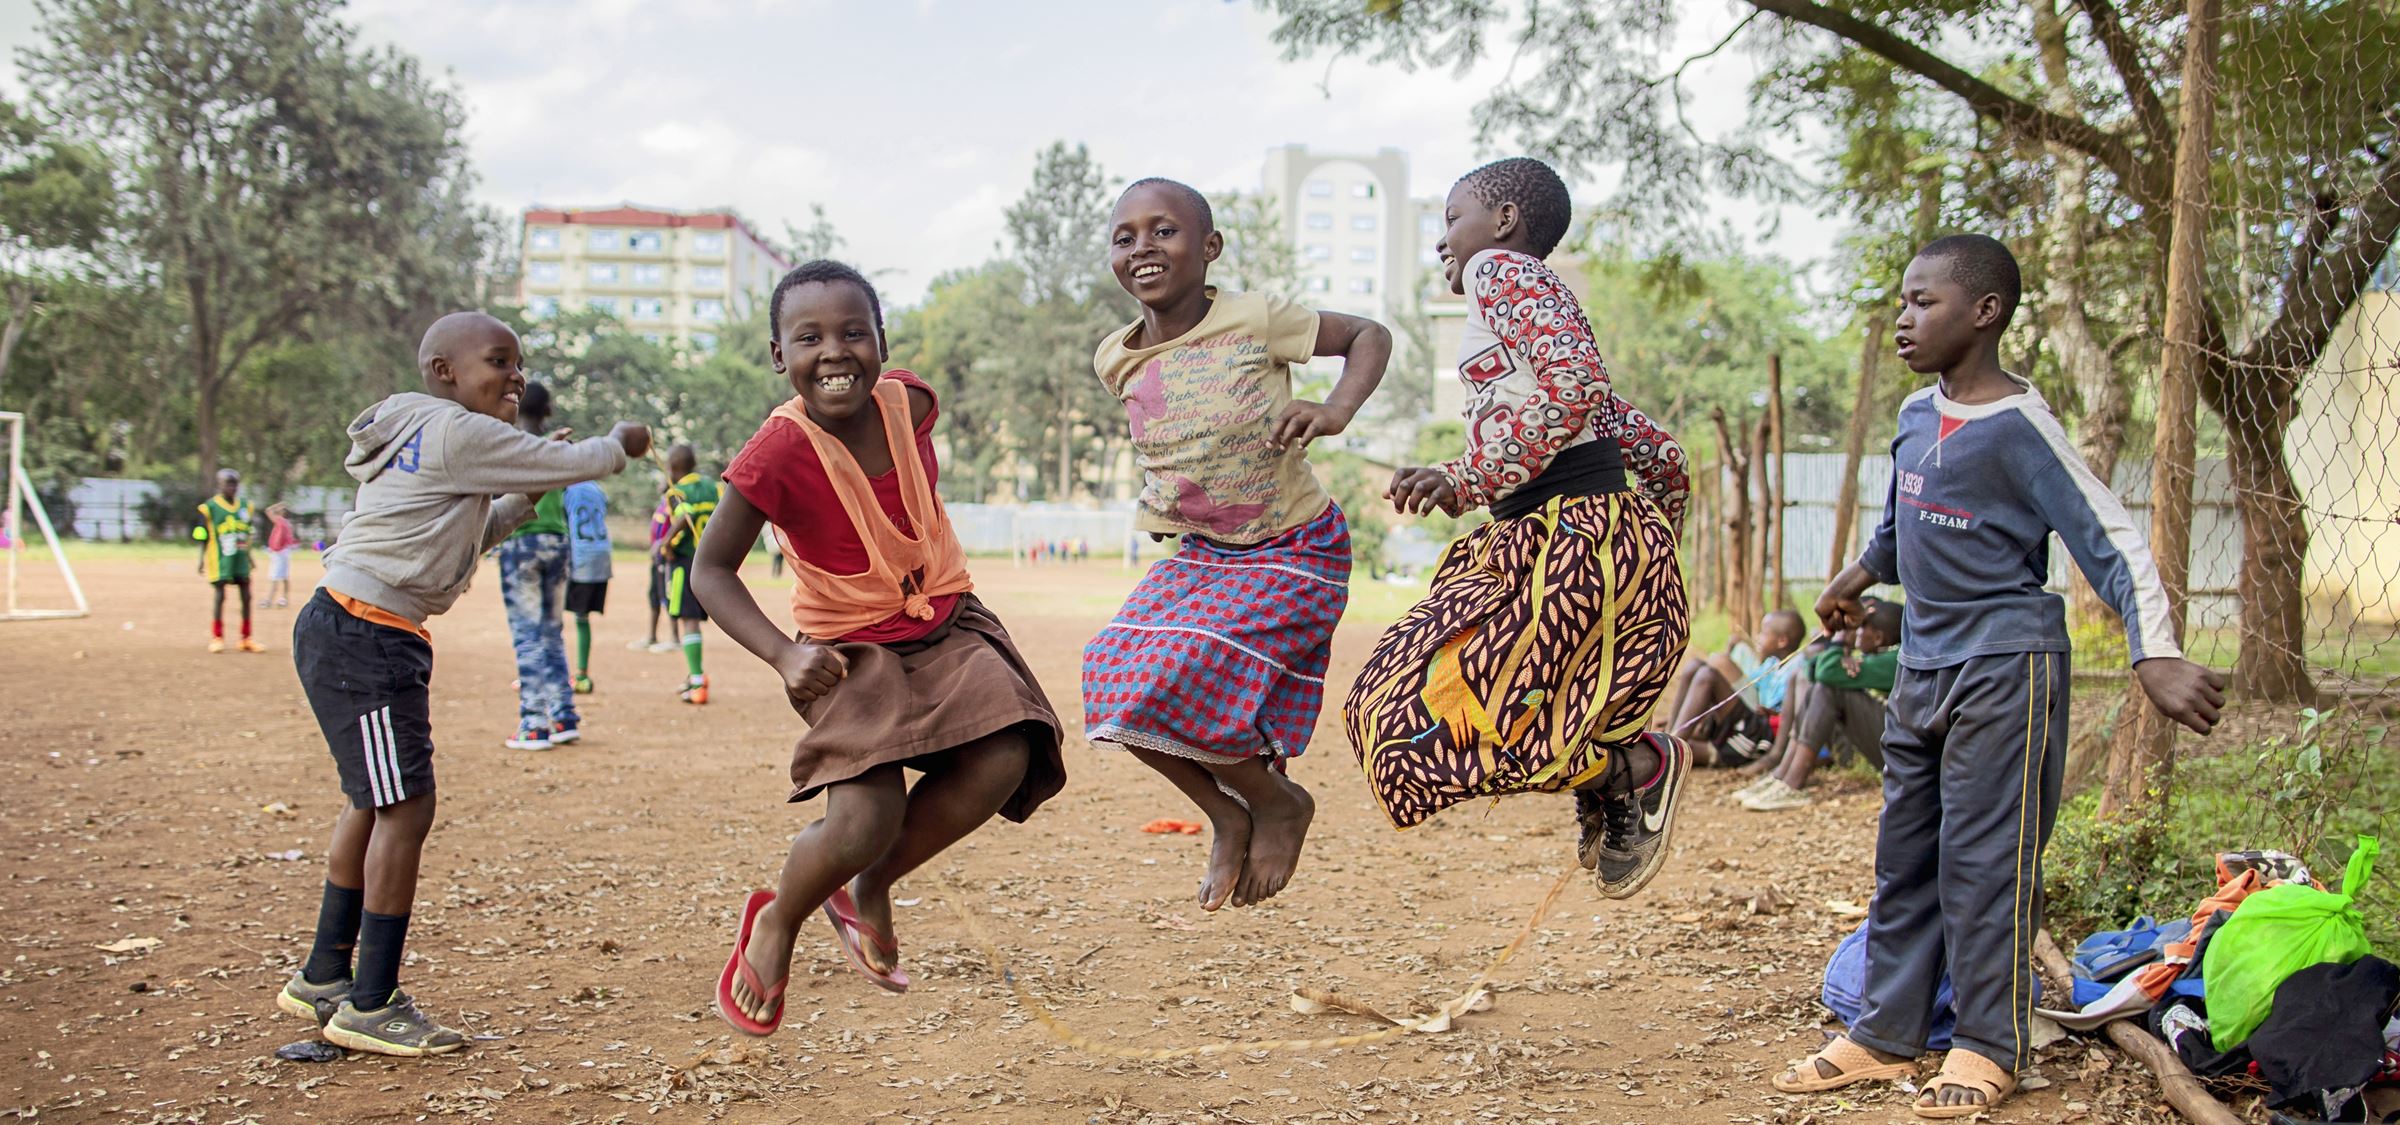 Kinder in Kenia springen auf einem Sandplatz wild durcheinander, im Hintergrund Bäume und große Häuser (Bildquelle: Lars Heidrich)